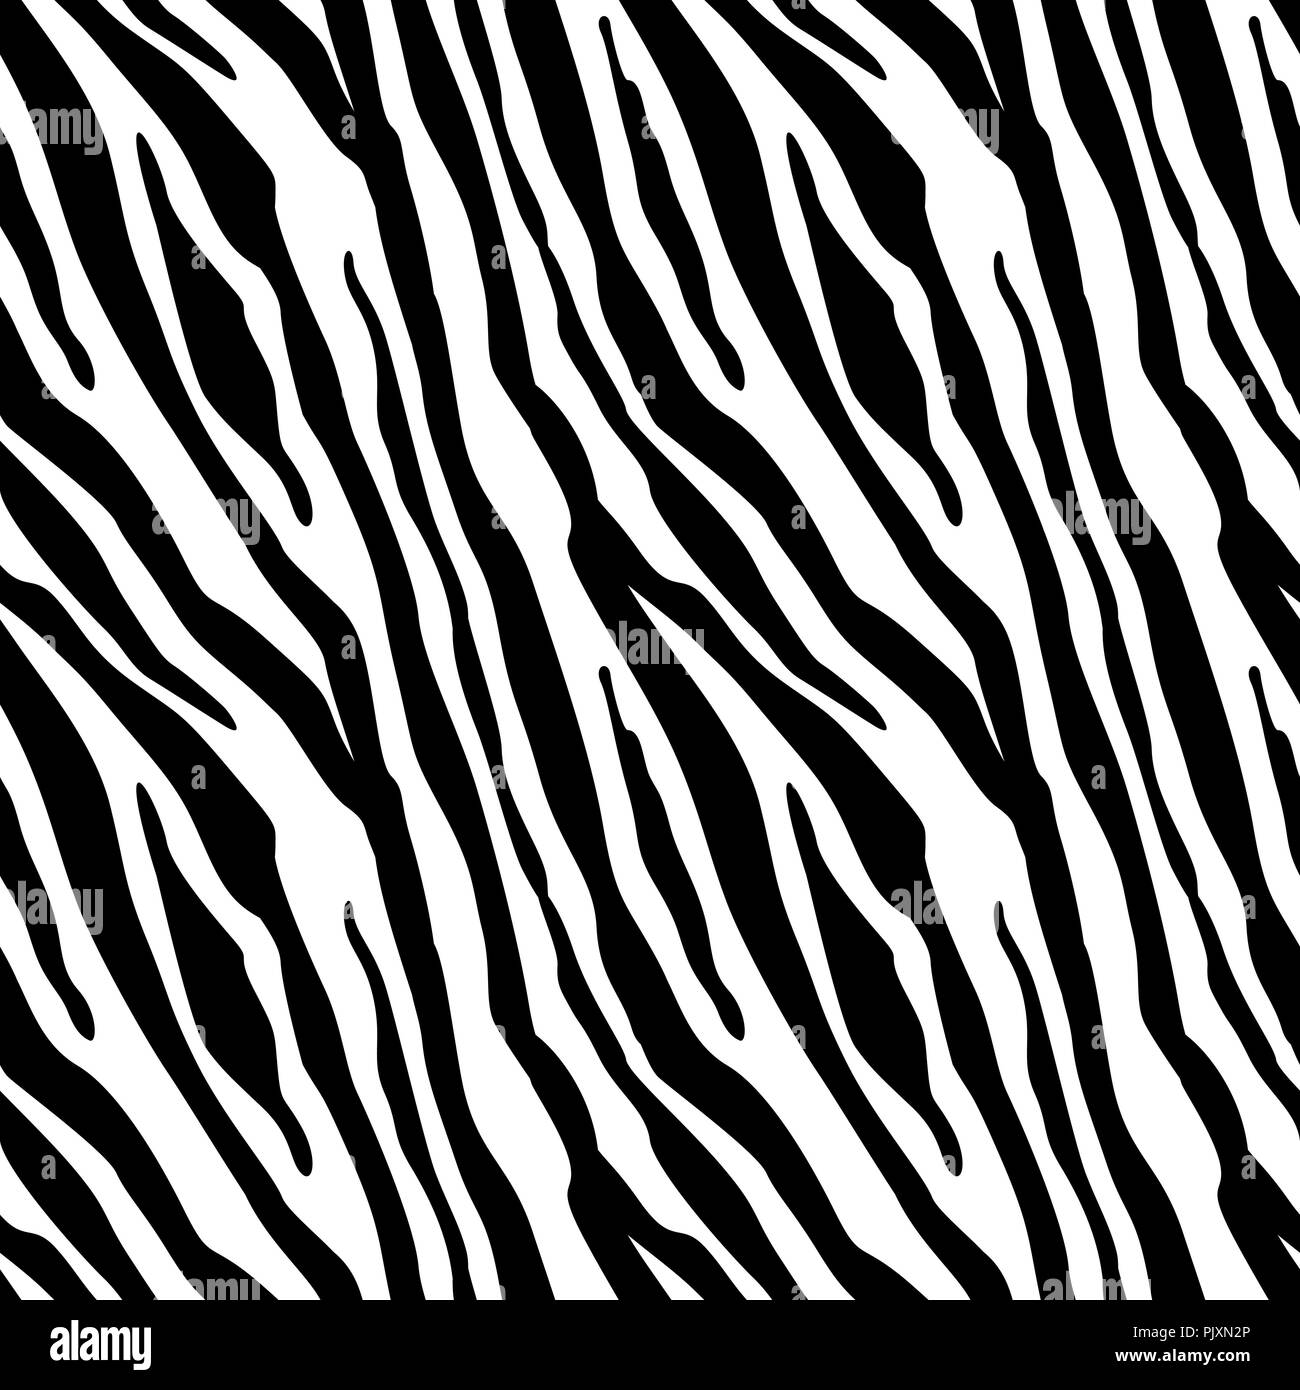 Zebra print Black and White Stock Photos & -